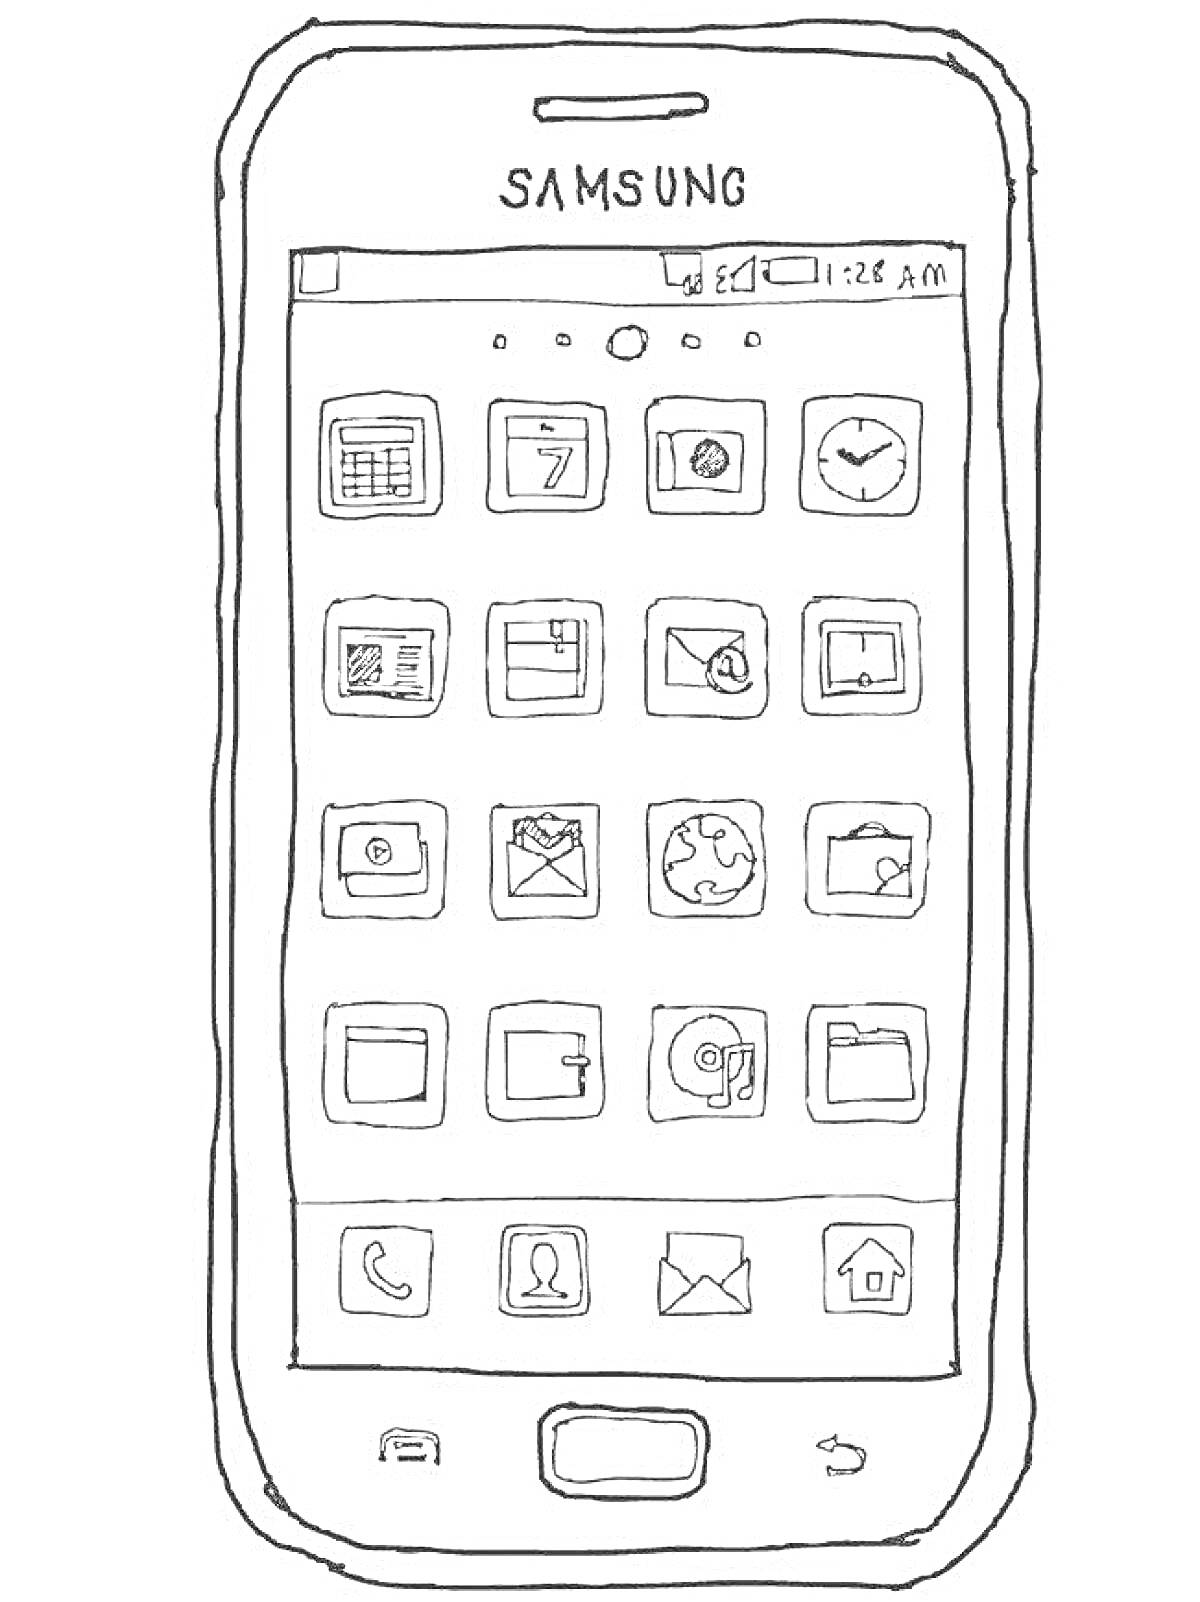 Телефон Samsung с иконками приложений (календарь, контакты, часы, настройки, сообщения, галерея, браузер, калькулятор, почта)